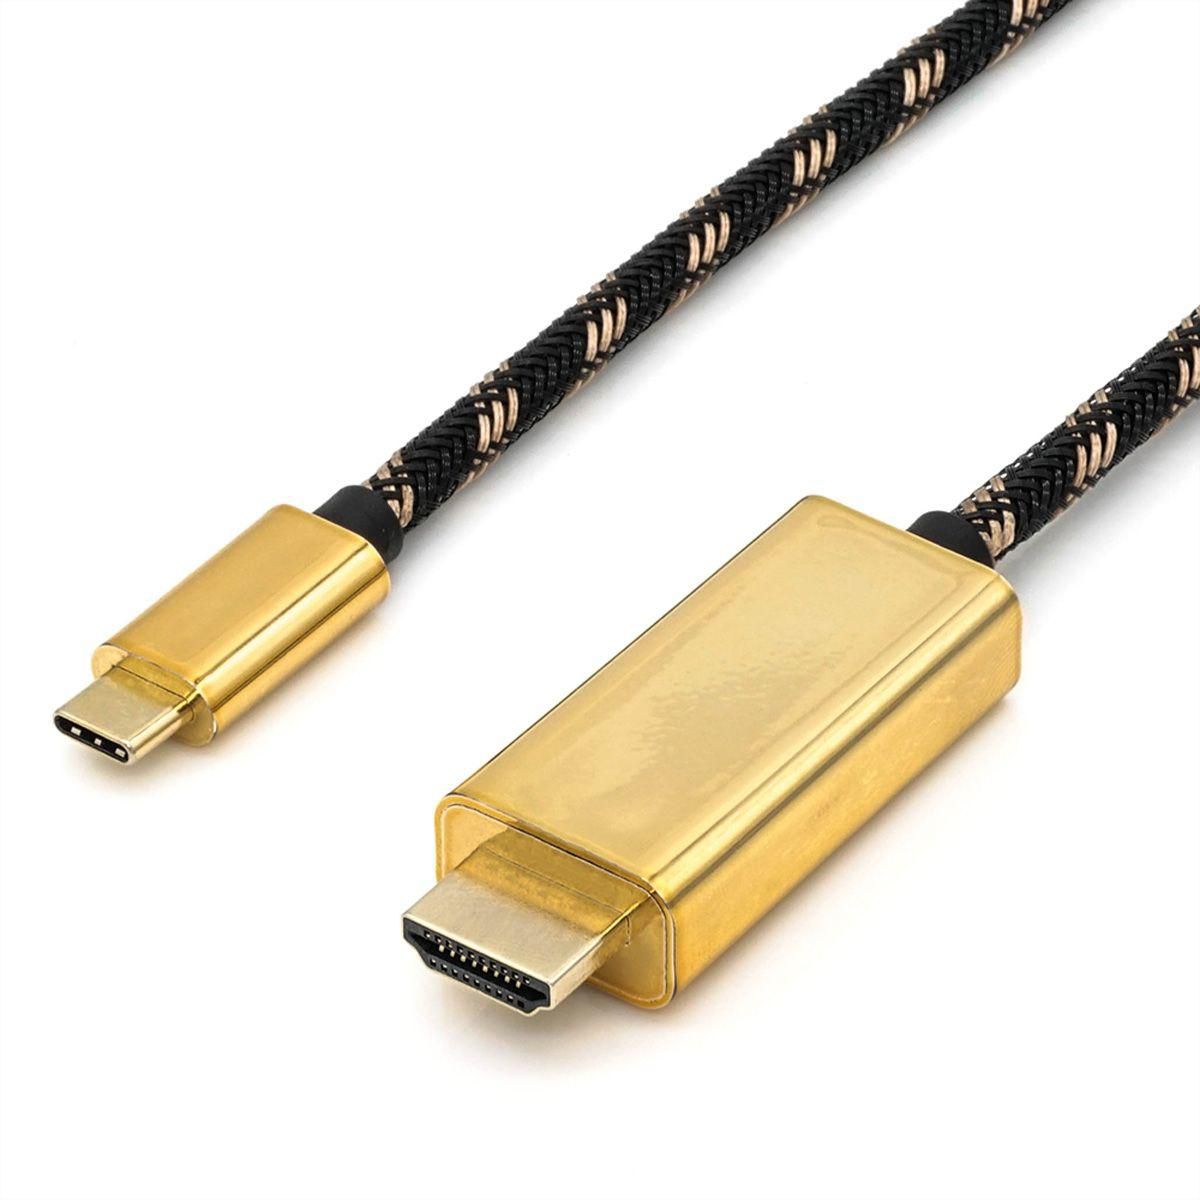 ROLINE GOLD Adptrkb. USB C-HDMI ST/ST 1m - Digital/Daten - Digital/Display/Video (11.04.5844)